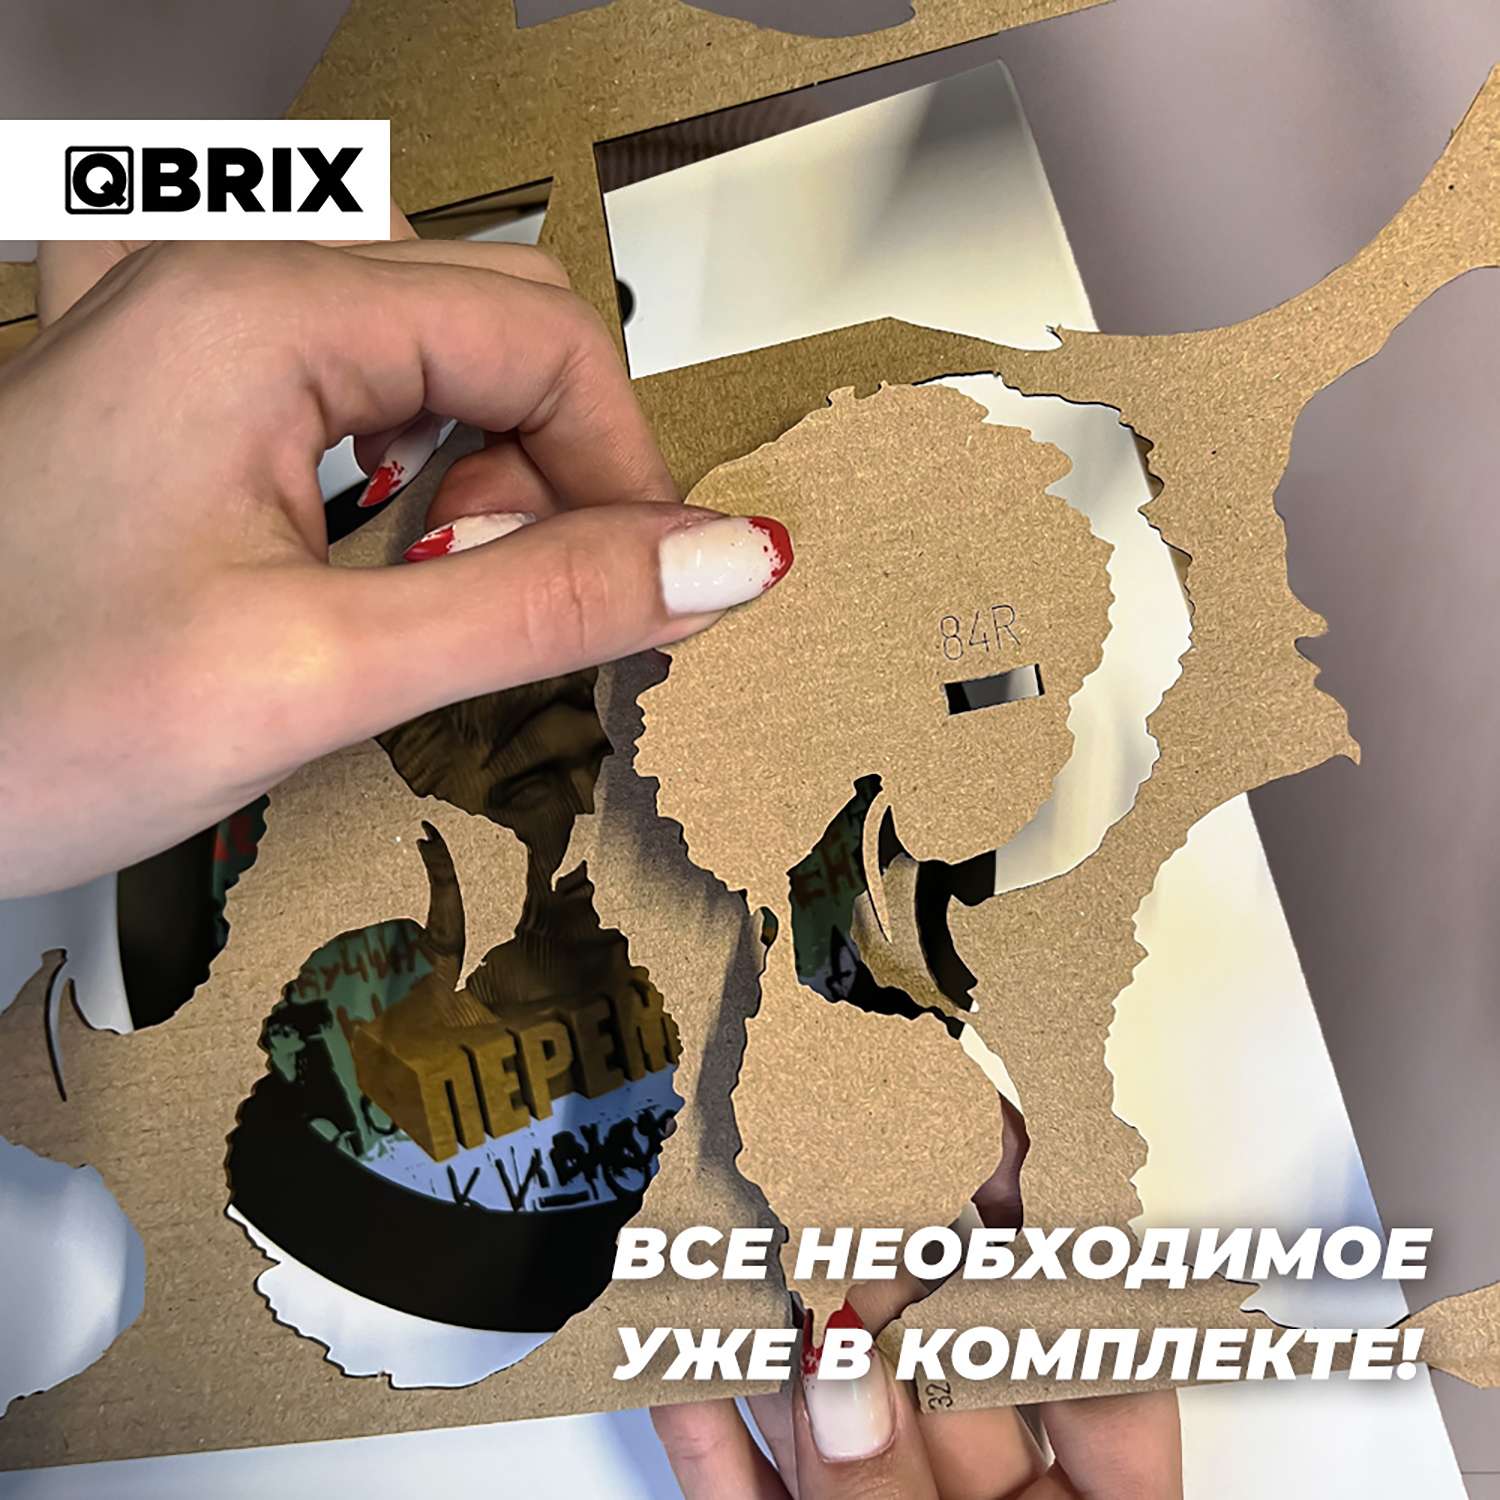 Конструктор QBRIX 3D картонный Виктор Цой 20016 20016 - фото 6